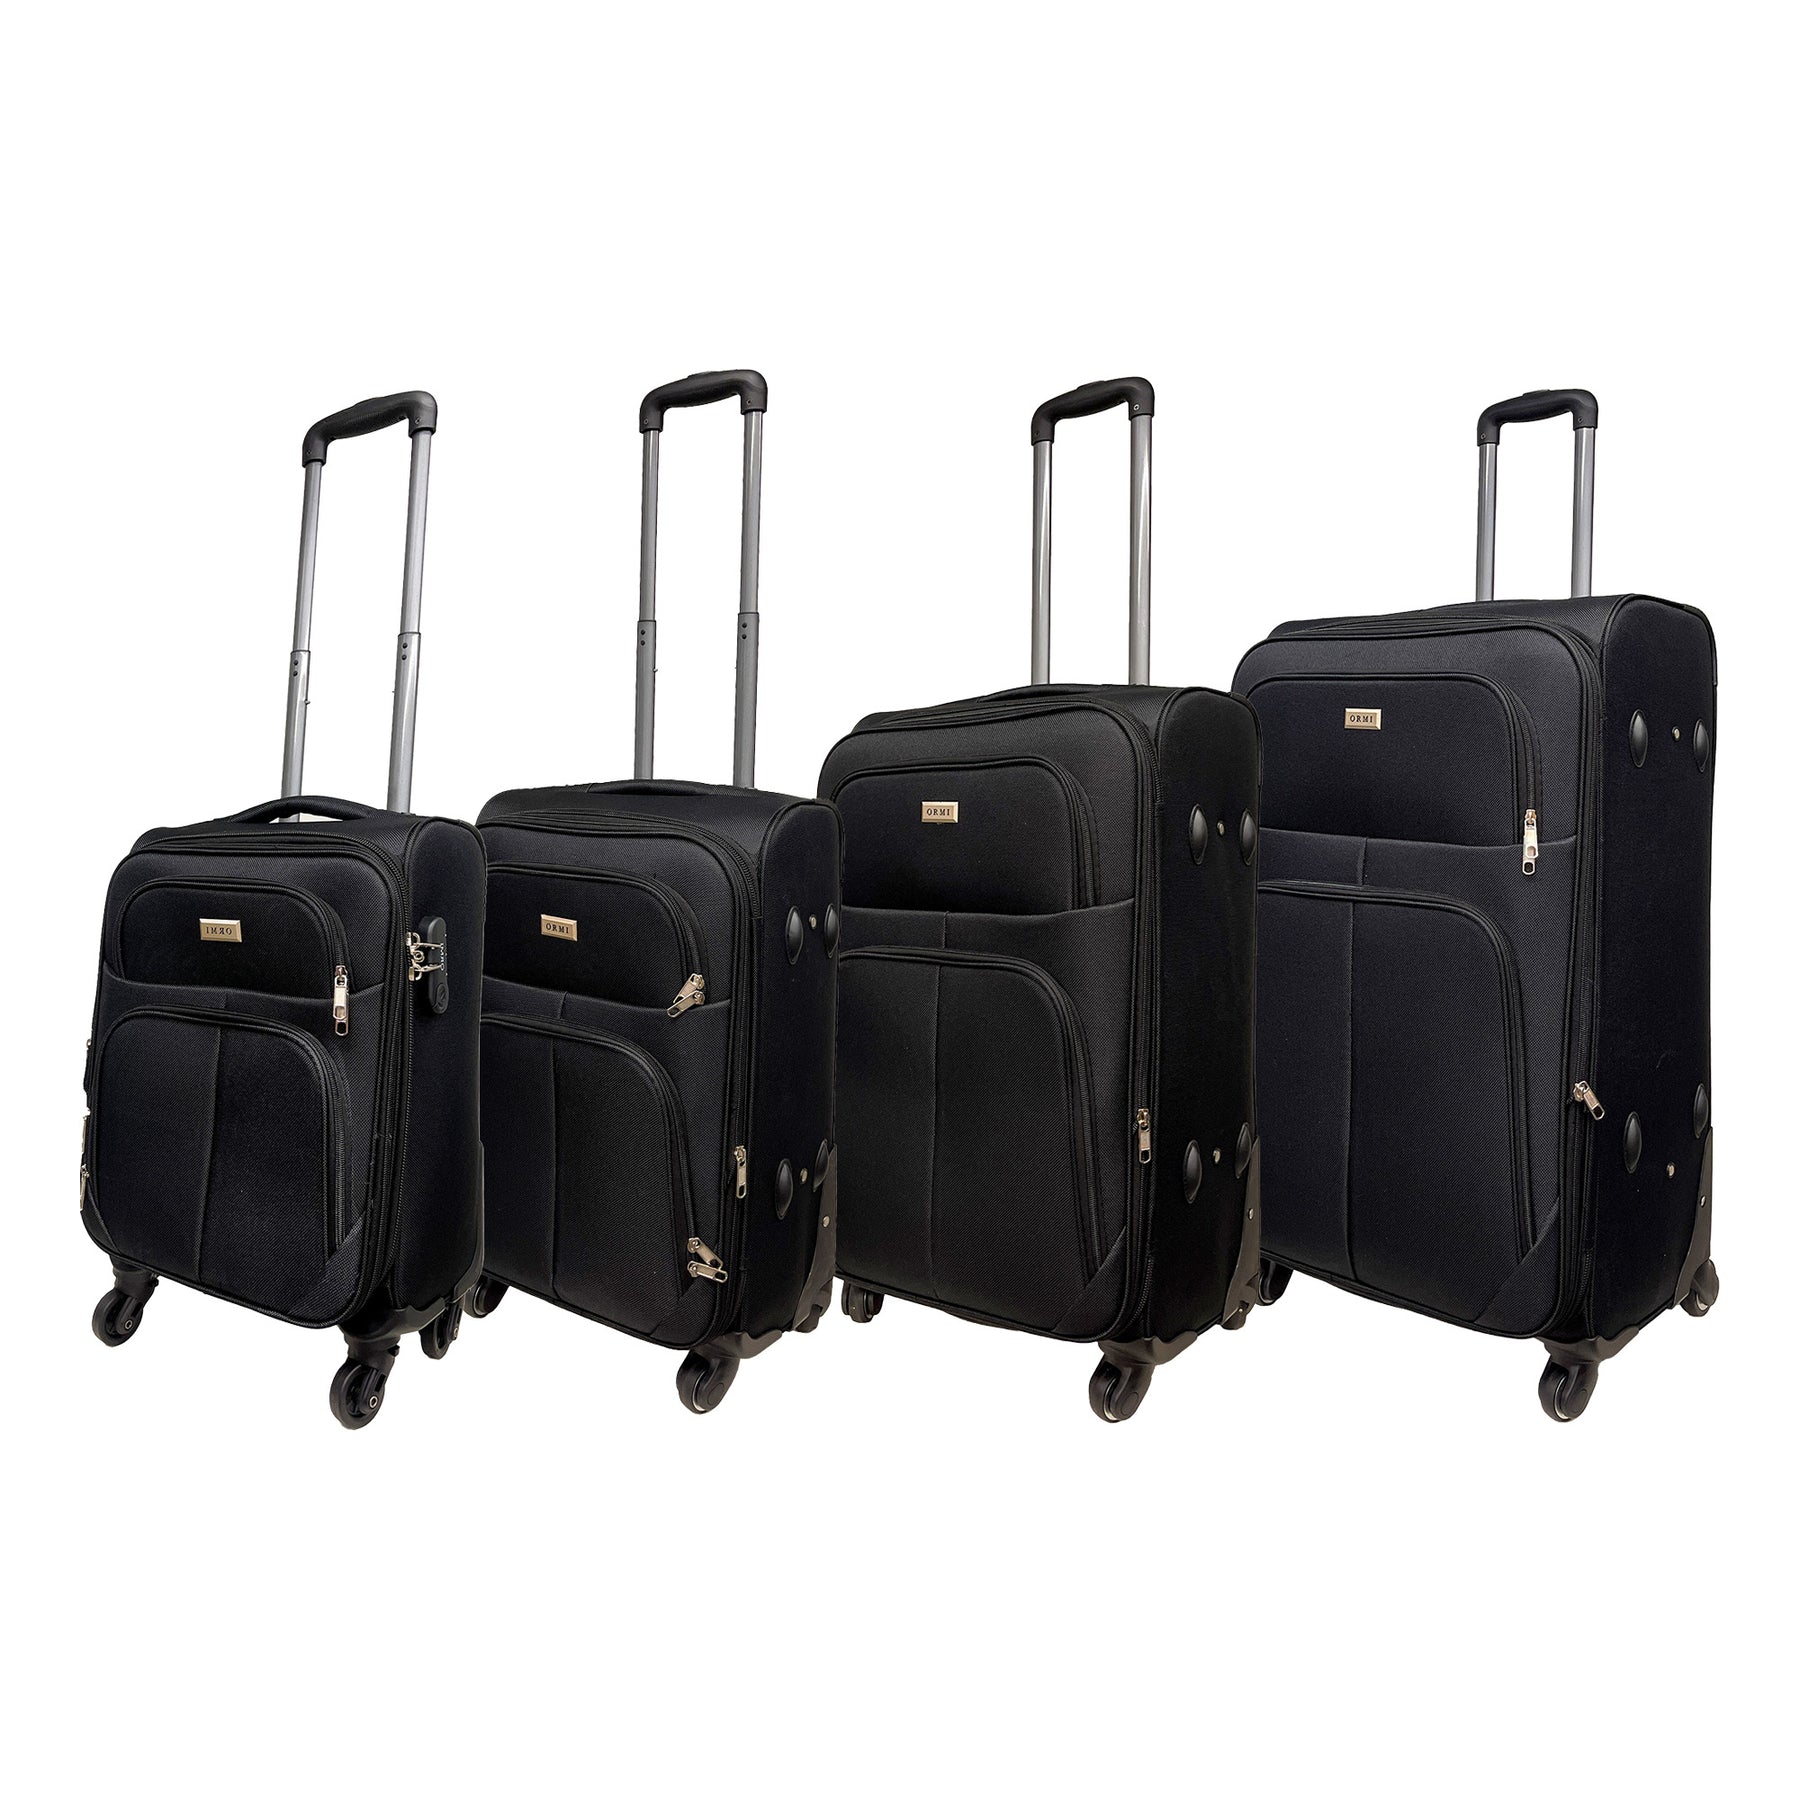 Ensemble de 4 valises à roulettes Ormi UoF - Extensibles, souples en tissu antichoc | XS 50 cm, S 55 cm, M 65 cm, L 75 cm